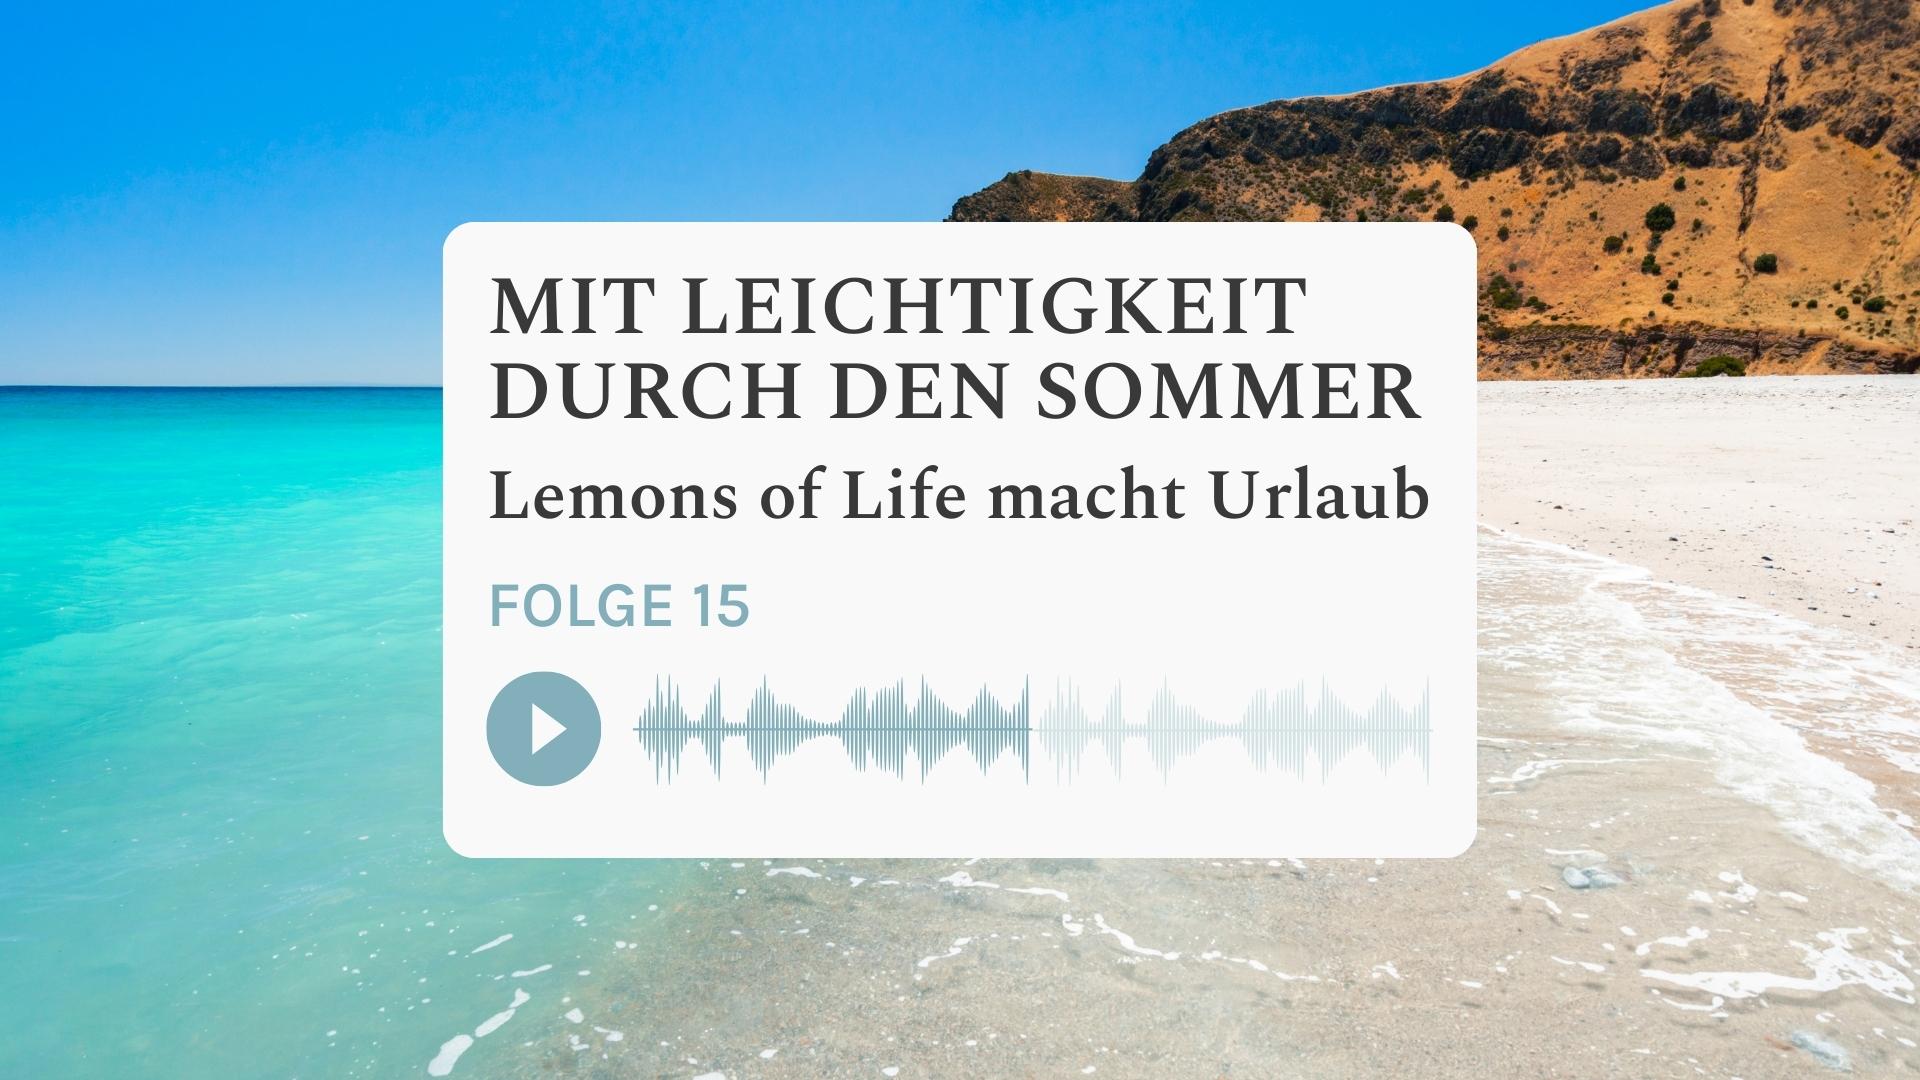 Mit Leichtigkeit durch den Sommer - „Lemons of Life“ macht Urlaub, Potentialentfaltung, Vision, Ziele, Performance